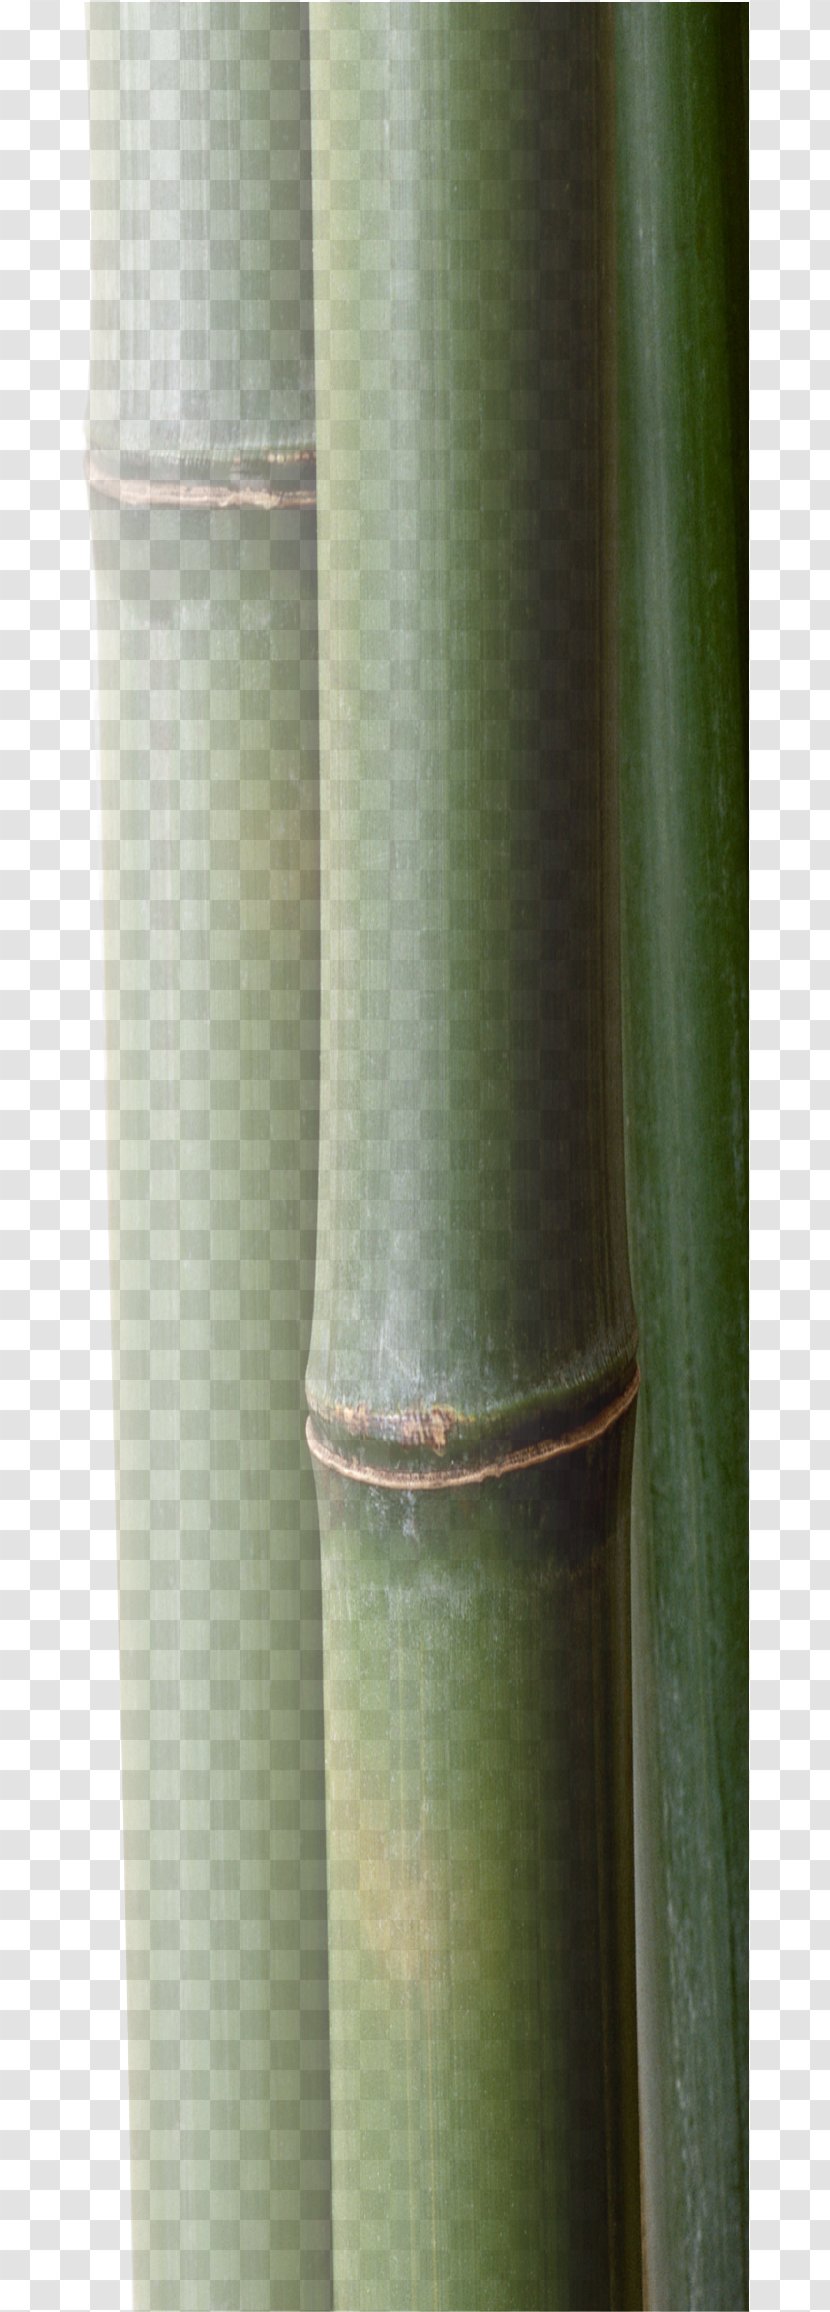 Plant Stem Cylinder - Bamboo Transparent PNG